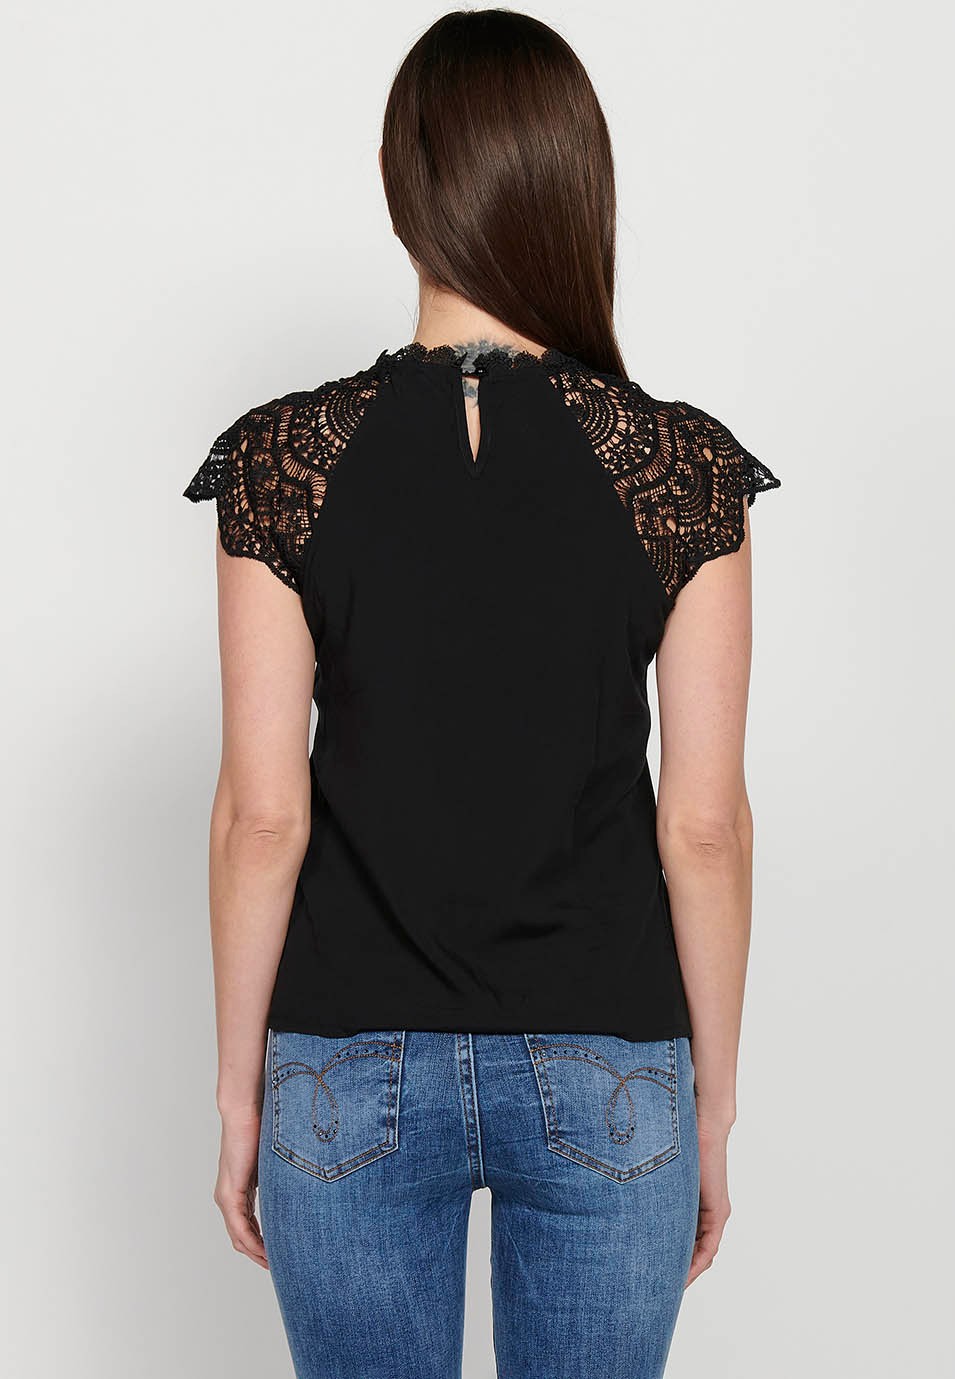 T-shirt sans manches, encolure ronde avec dentelle, coloris Noir pour femme